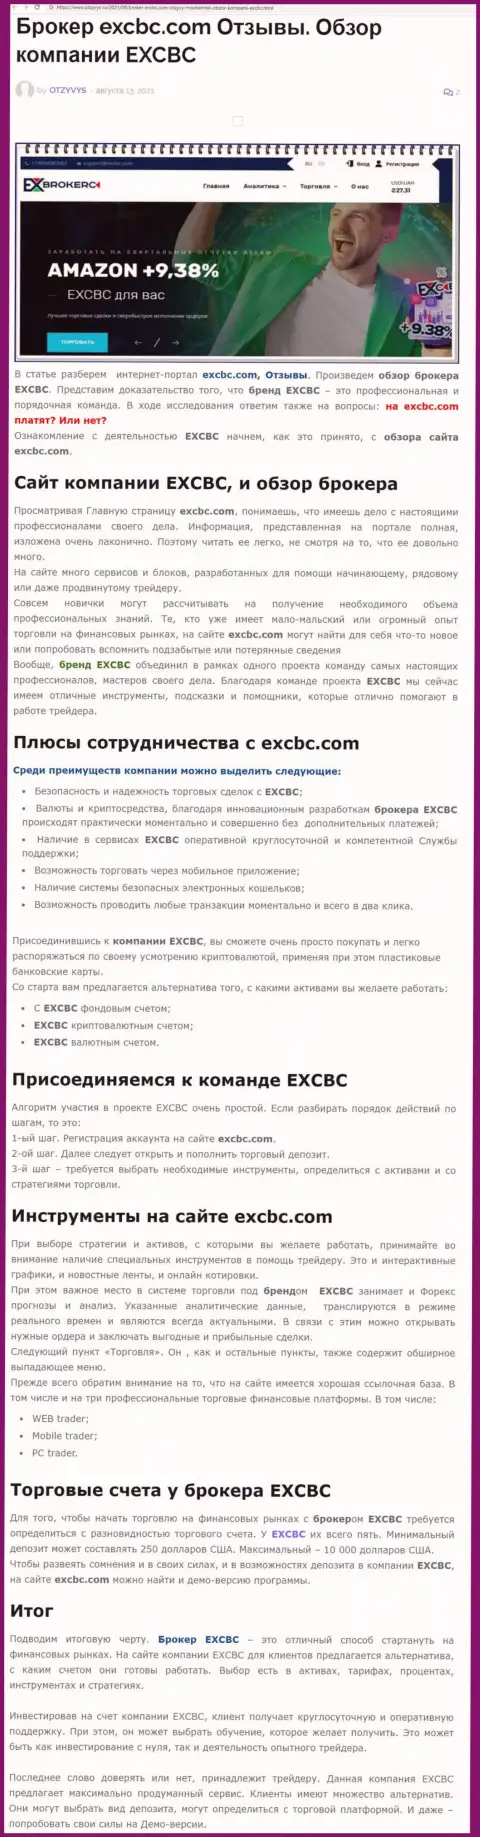 ЕХЧЕНЖБК Лтд Инк это ответственная и надежная ФОРЕКС компания, это следует из статьи на интернет-портале Otzyvys Ru